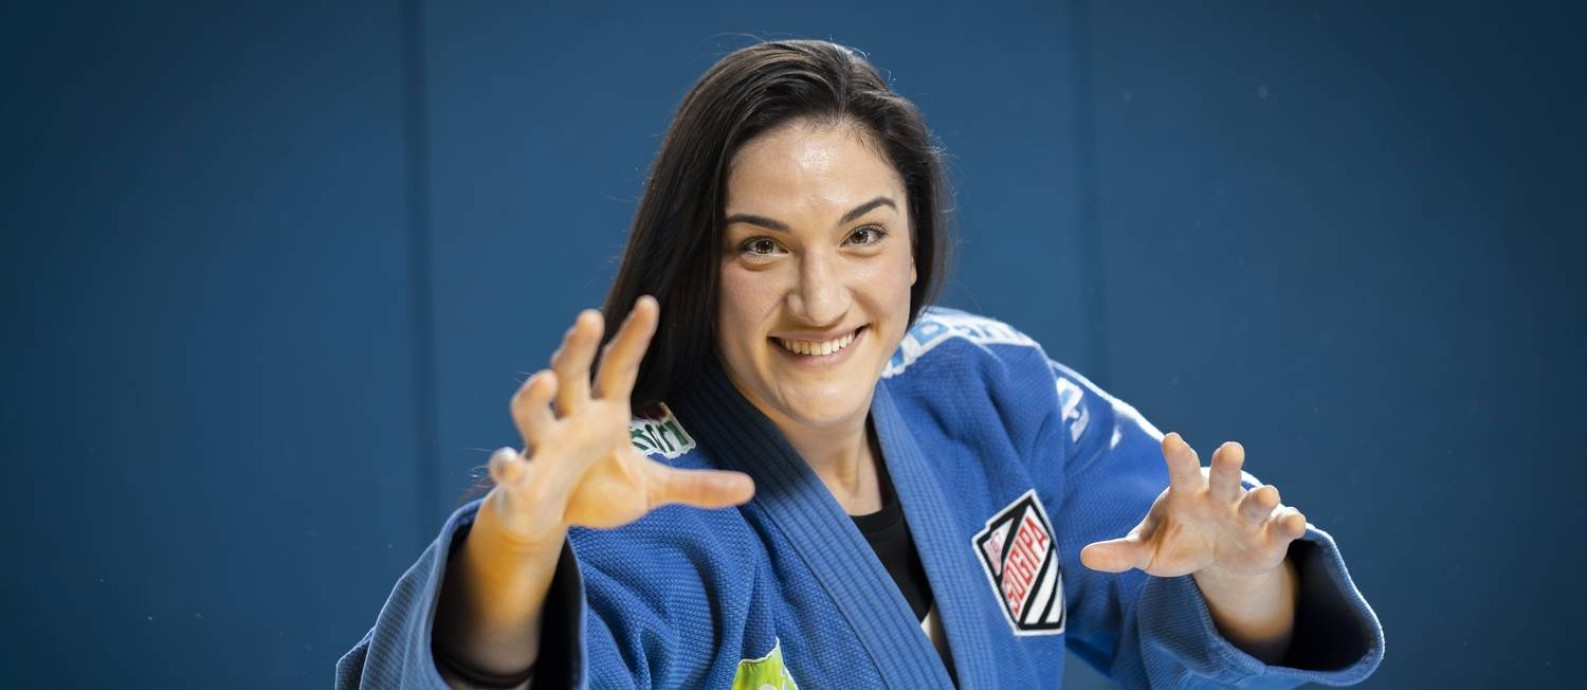 Mayra Aguiar tenta a terceira medalha olímpica em Tóquio Foto: Ricardo Jaeger / Agência O Globo